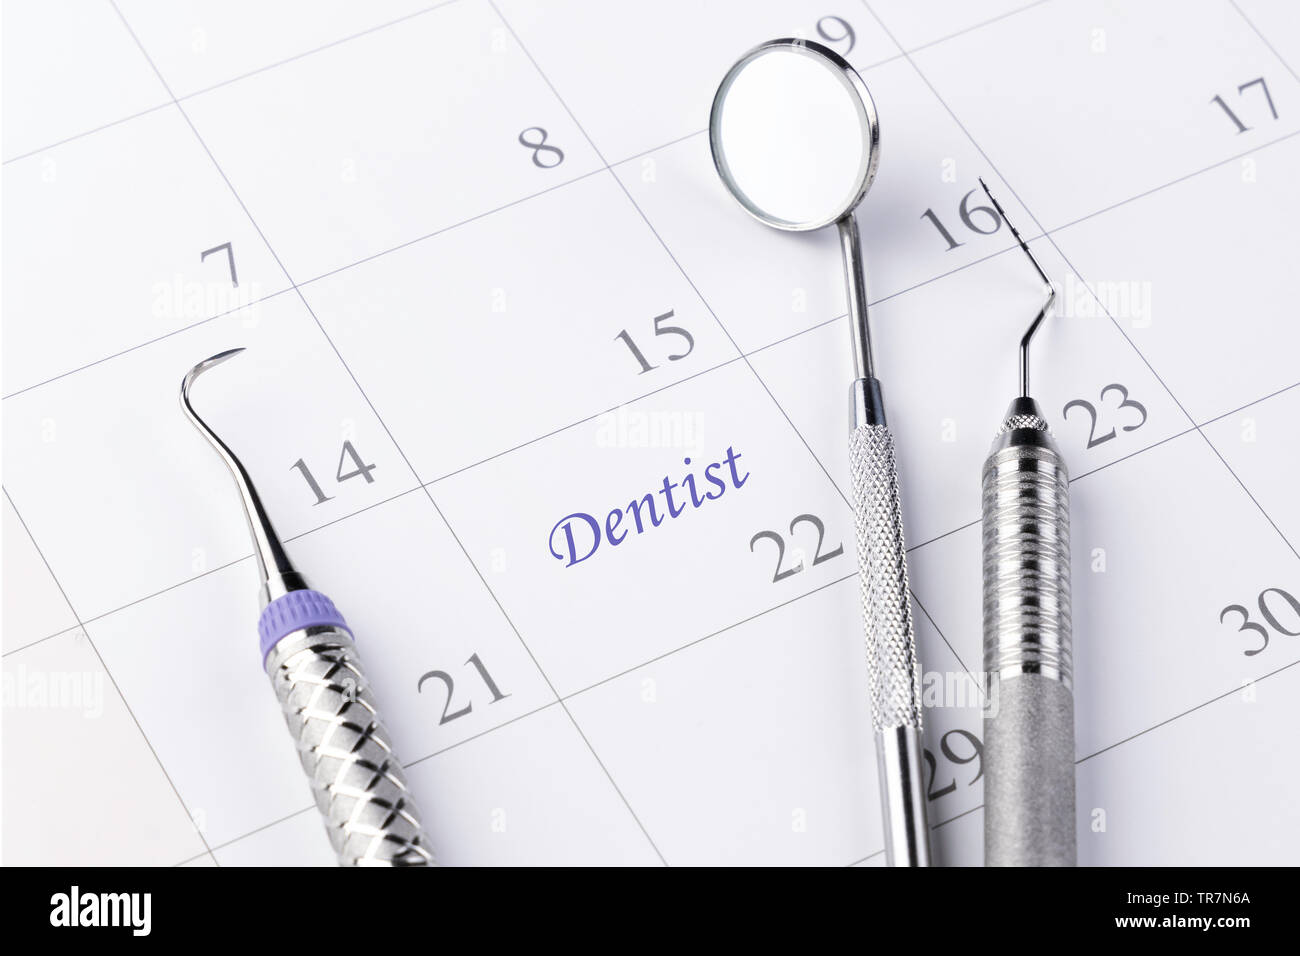 Recordatorio dentista cita en Calendario y profesional- Imagen herramientas dentales. Foto de stock